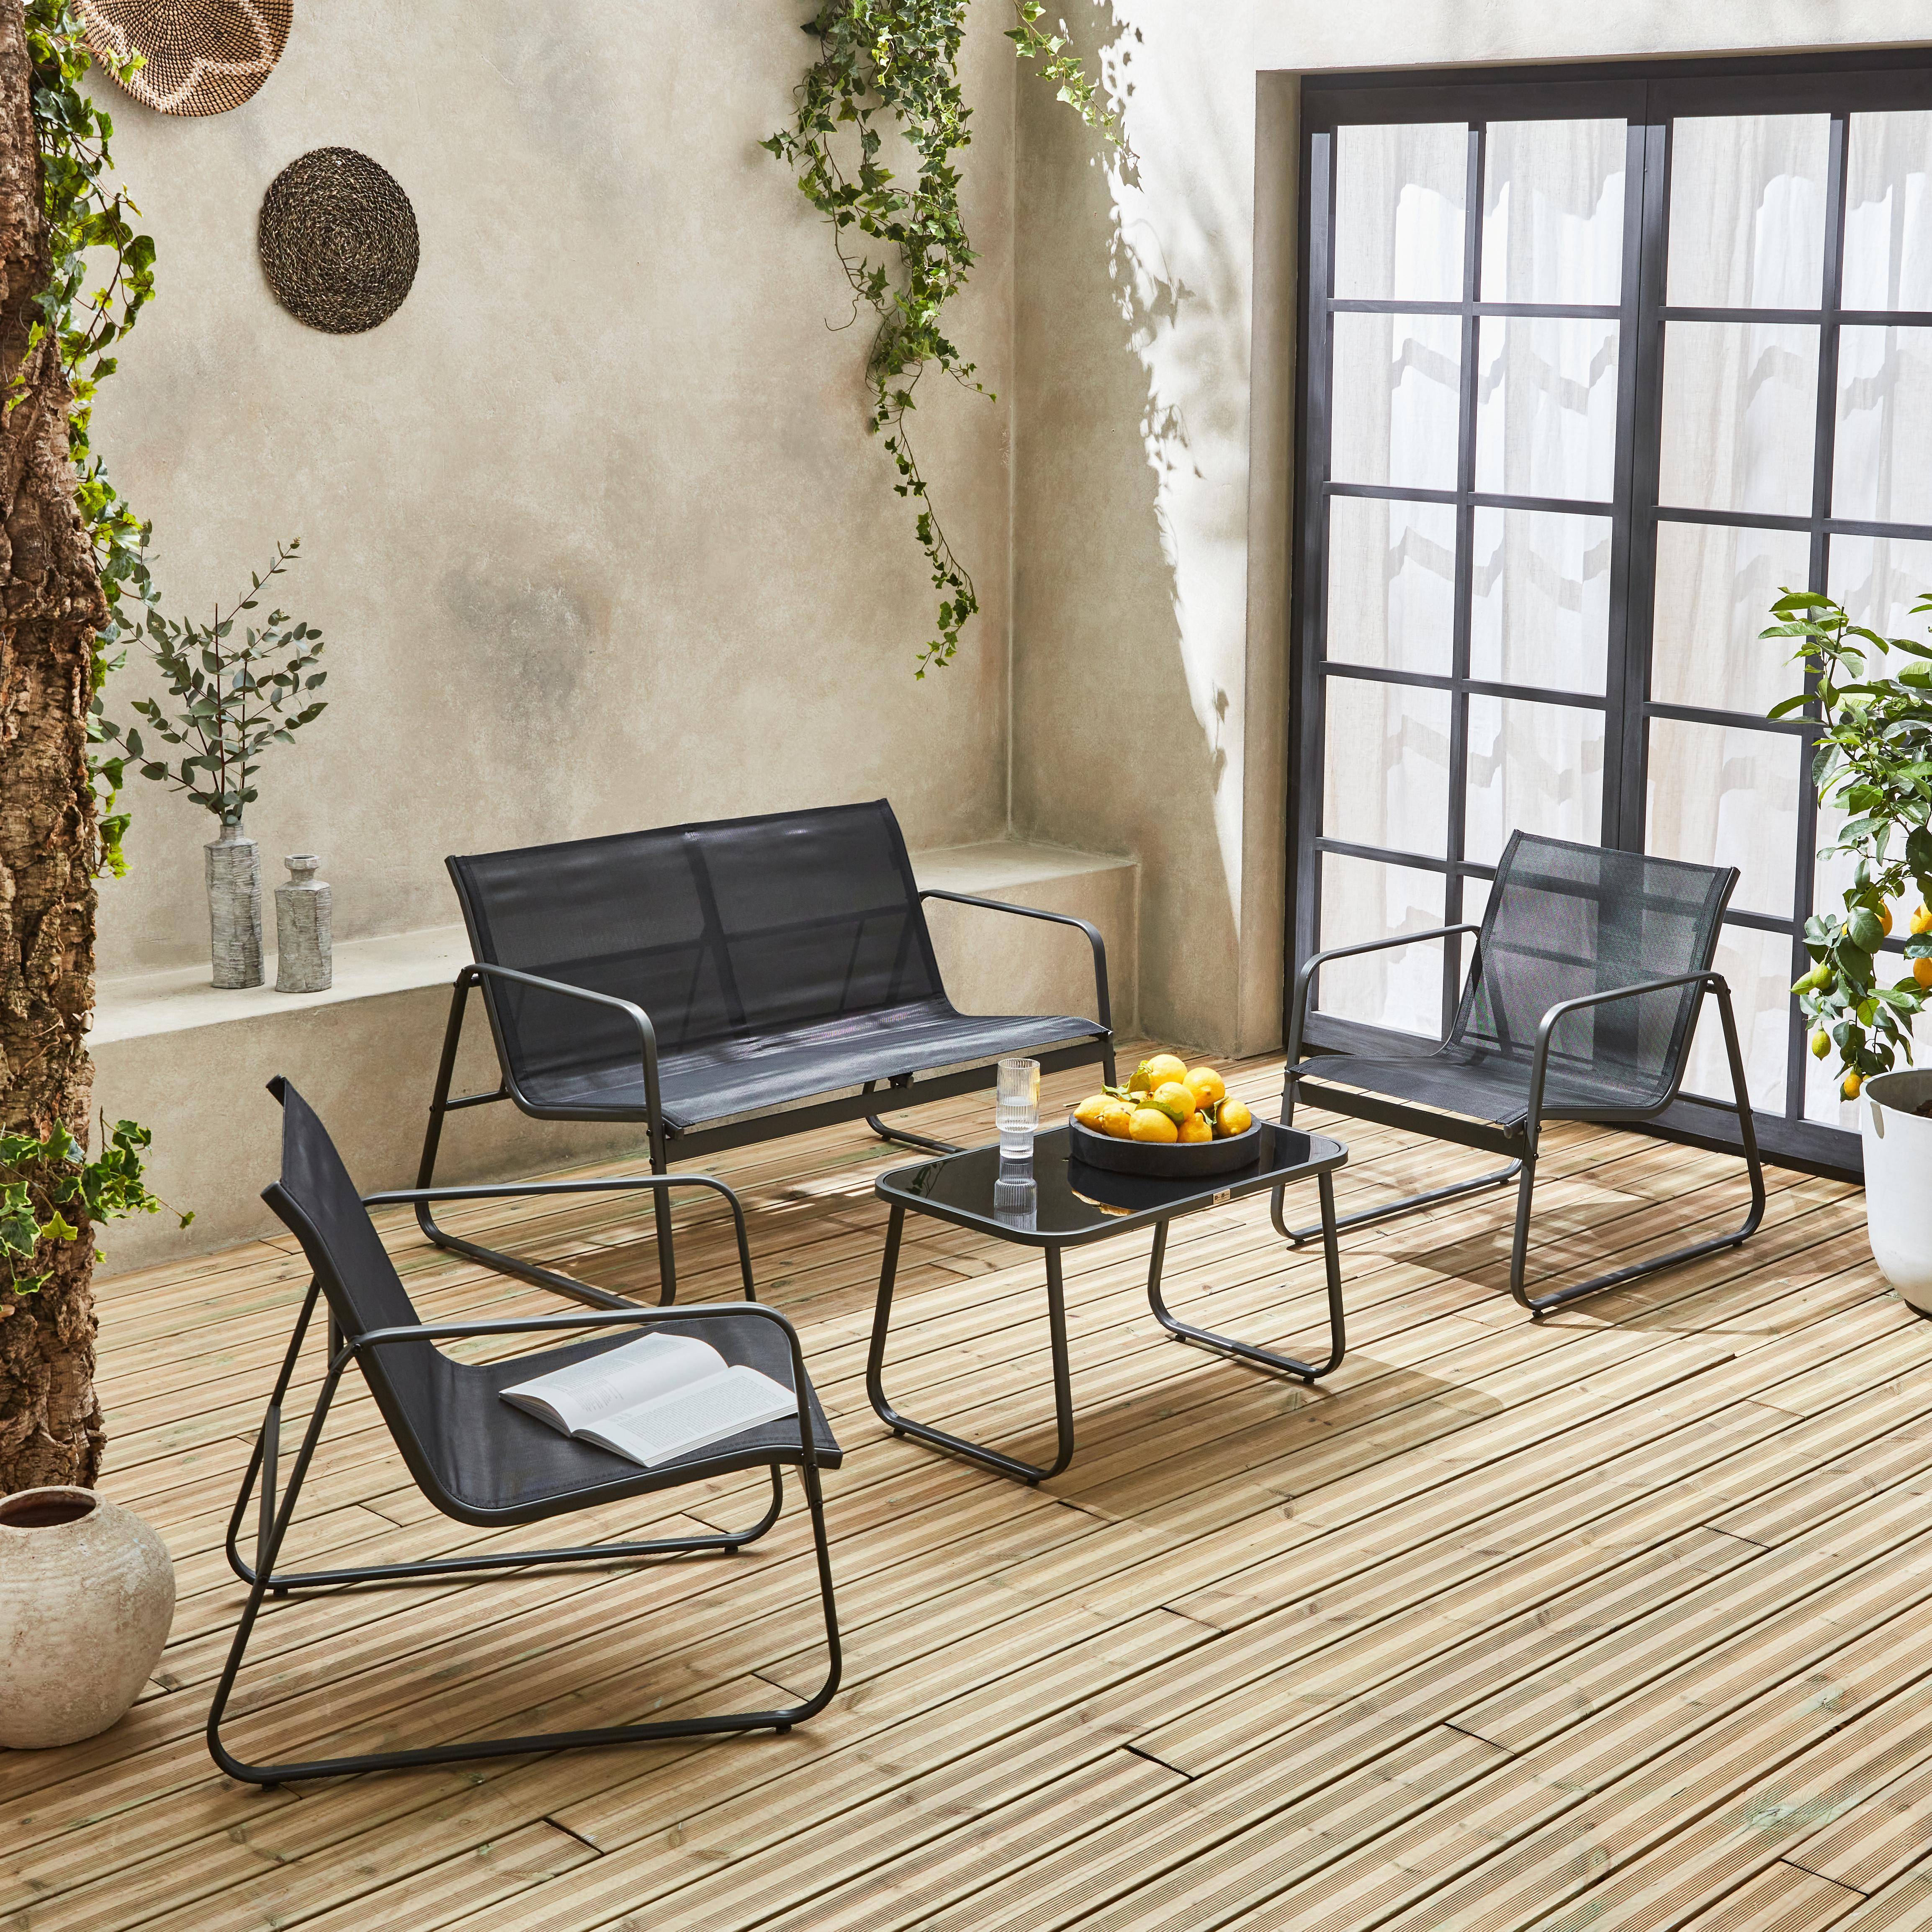 Balkon loungeset metaal en textilene voor 4 personen, zwart, design   Photo2